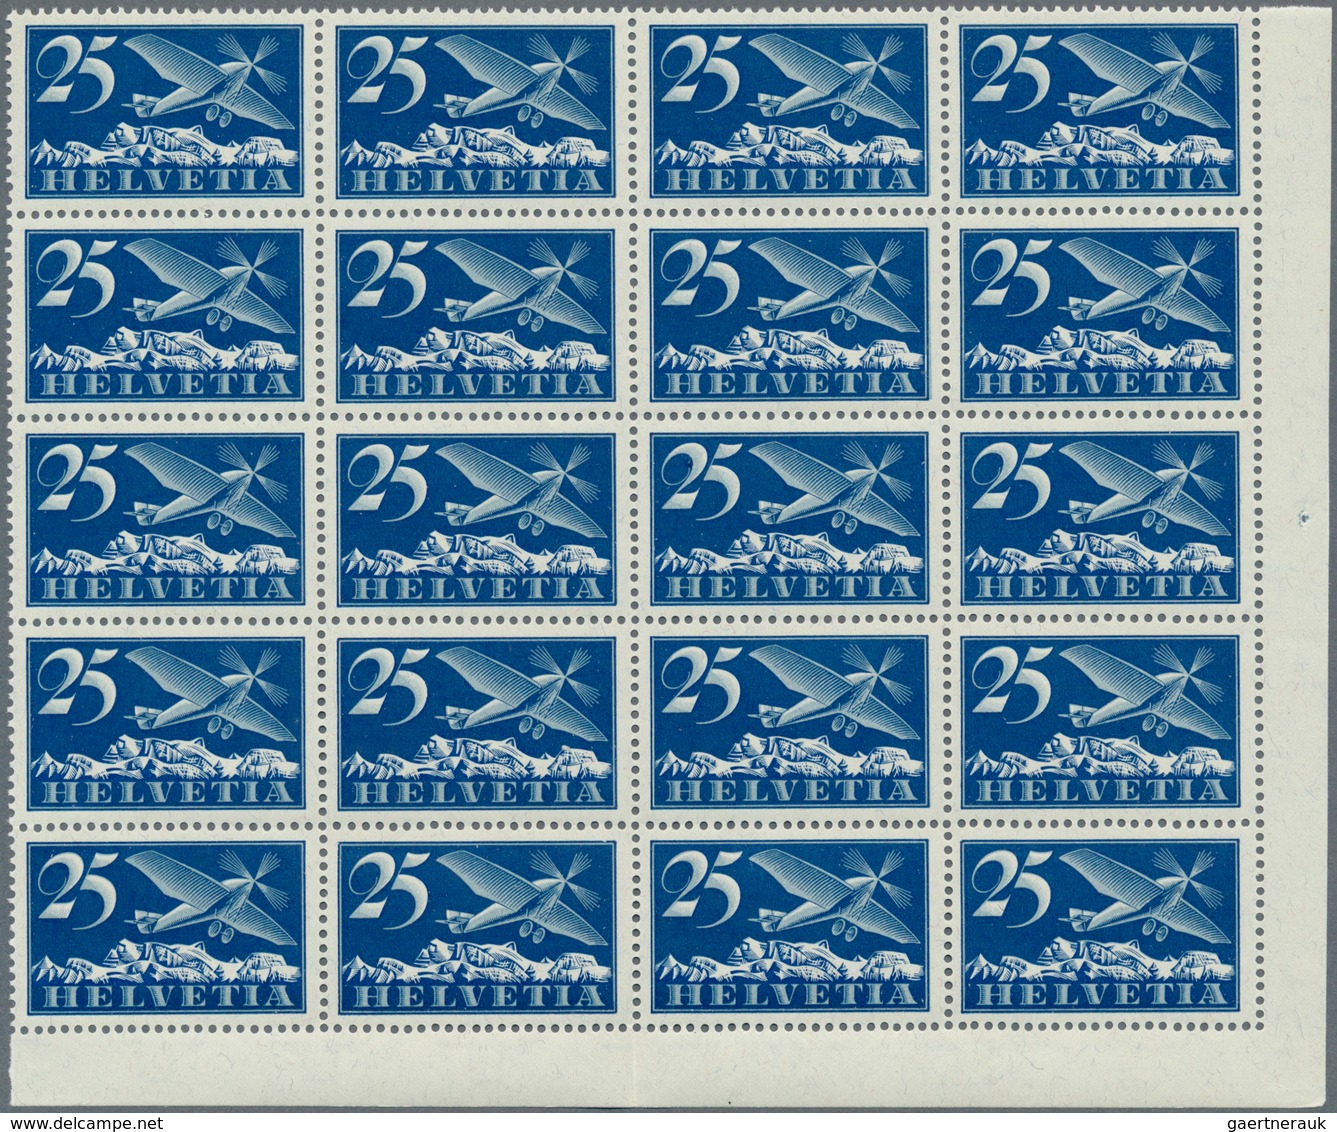 Schweiz: 1923-25 Flugpost-Satz von 7 Werten, von 15 Rp. bis 50 Rp. inkl. 20 Rp. auf glattem Papier,